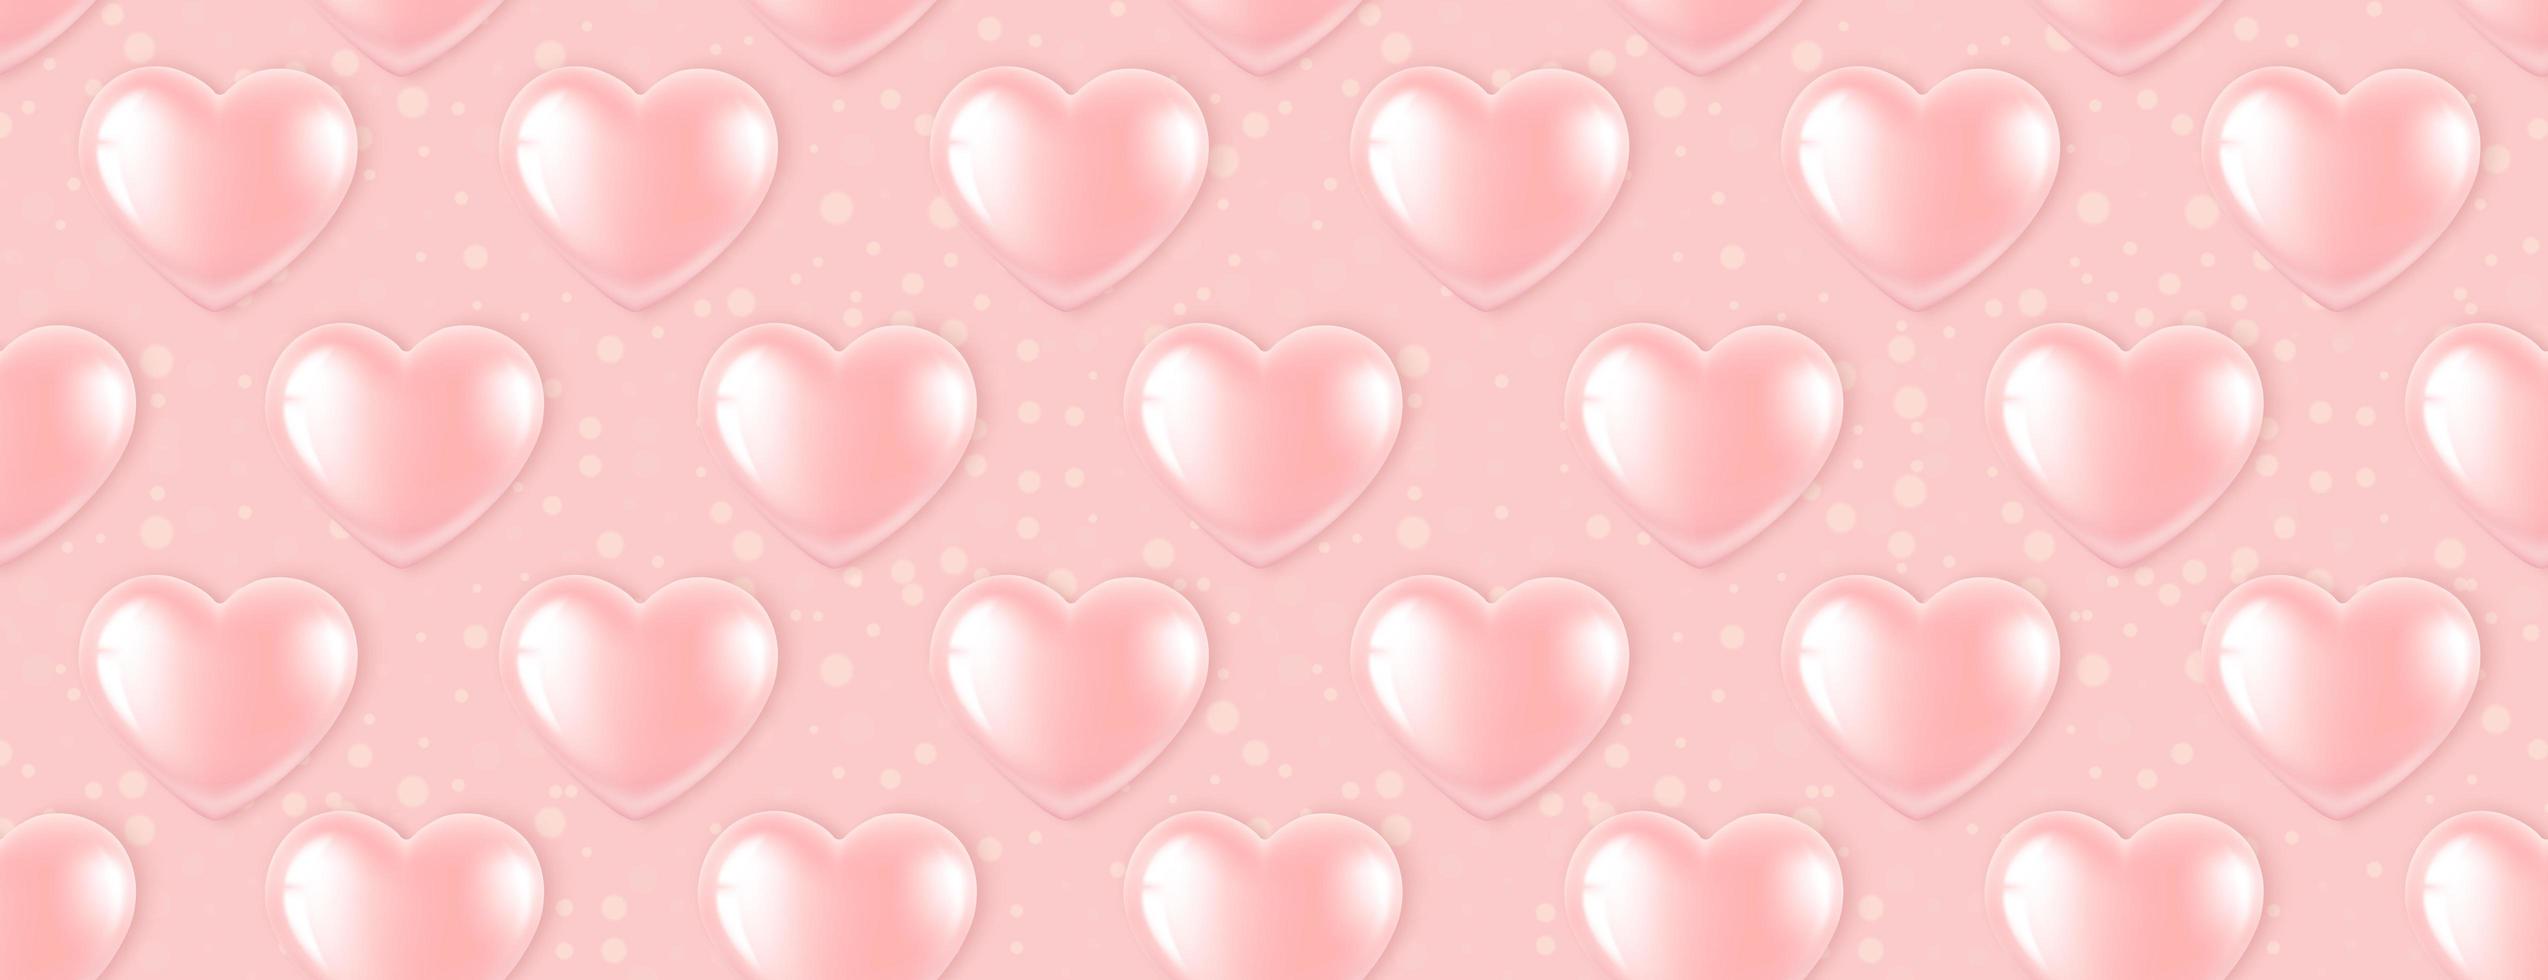 Patrones sin fisuras con globos de corazón rosa vector